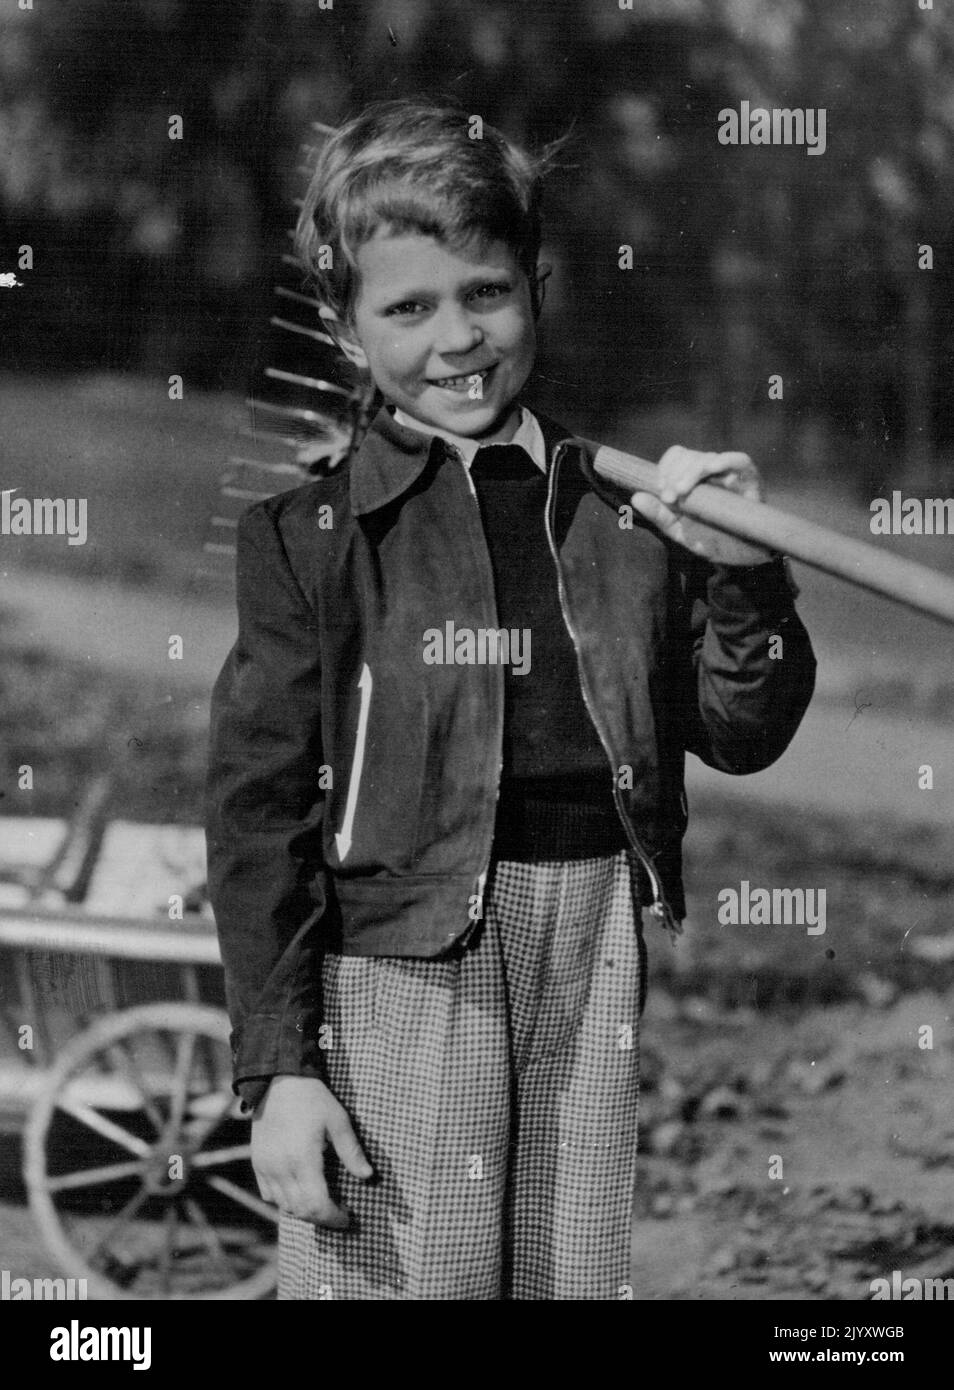 Ein königlicher Prinz ist sieben Jahre alt - Ein Happy Birthday Bild des schwedischen Kronprinzen Charles Gustaf, der am 30.. April 1953 sieben Jahre alt wird. Der Fotograf wurde in den wunderschönen Gärten des Landguts des jungen Prinzen aufgenommen, dem königlichen Schloss von Hang in der Nähe von Stockholm. 23. April 1953. (Foto von Paul Popper, Paul Popper Ltd.) Stockfoto